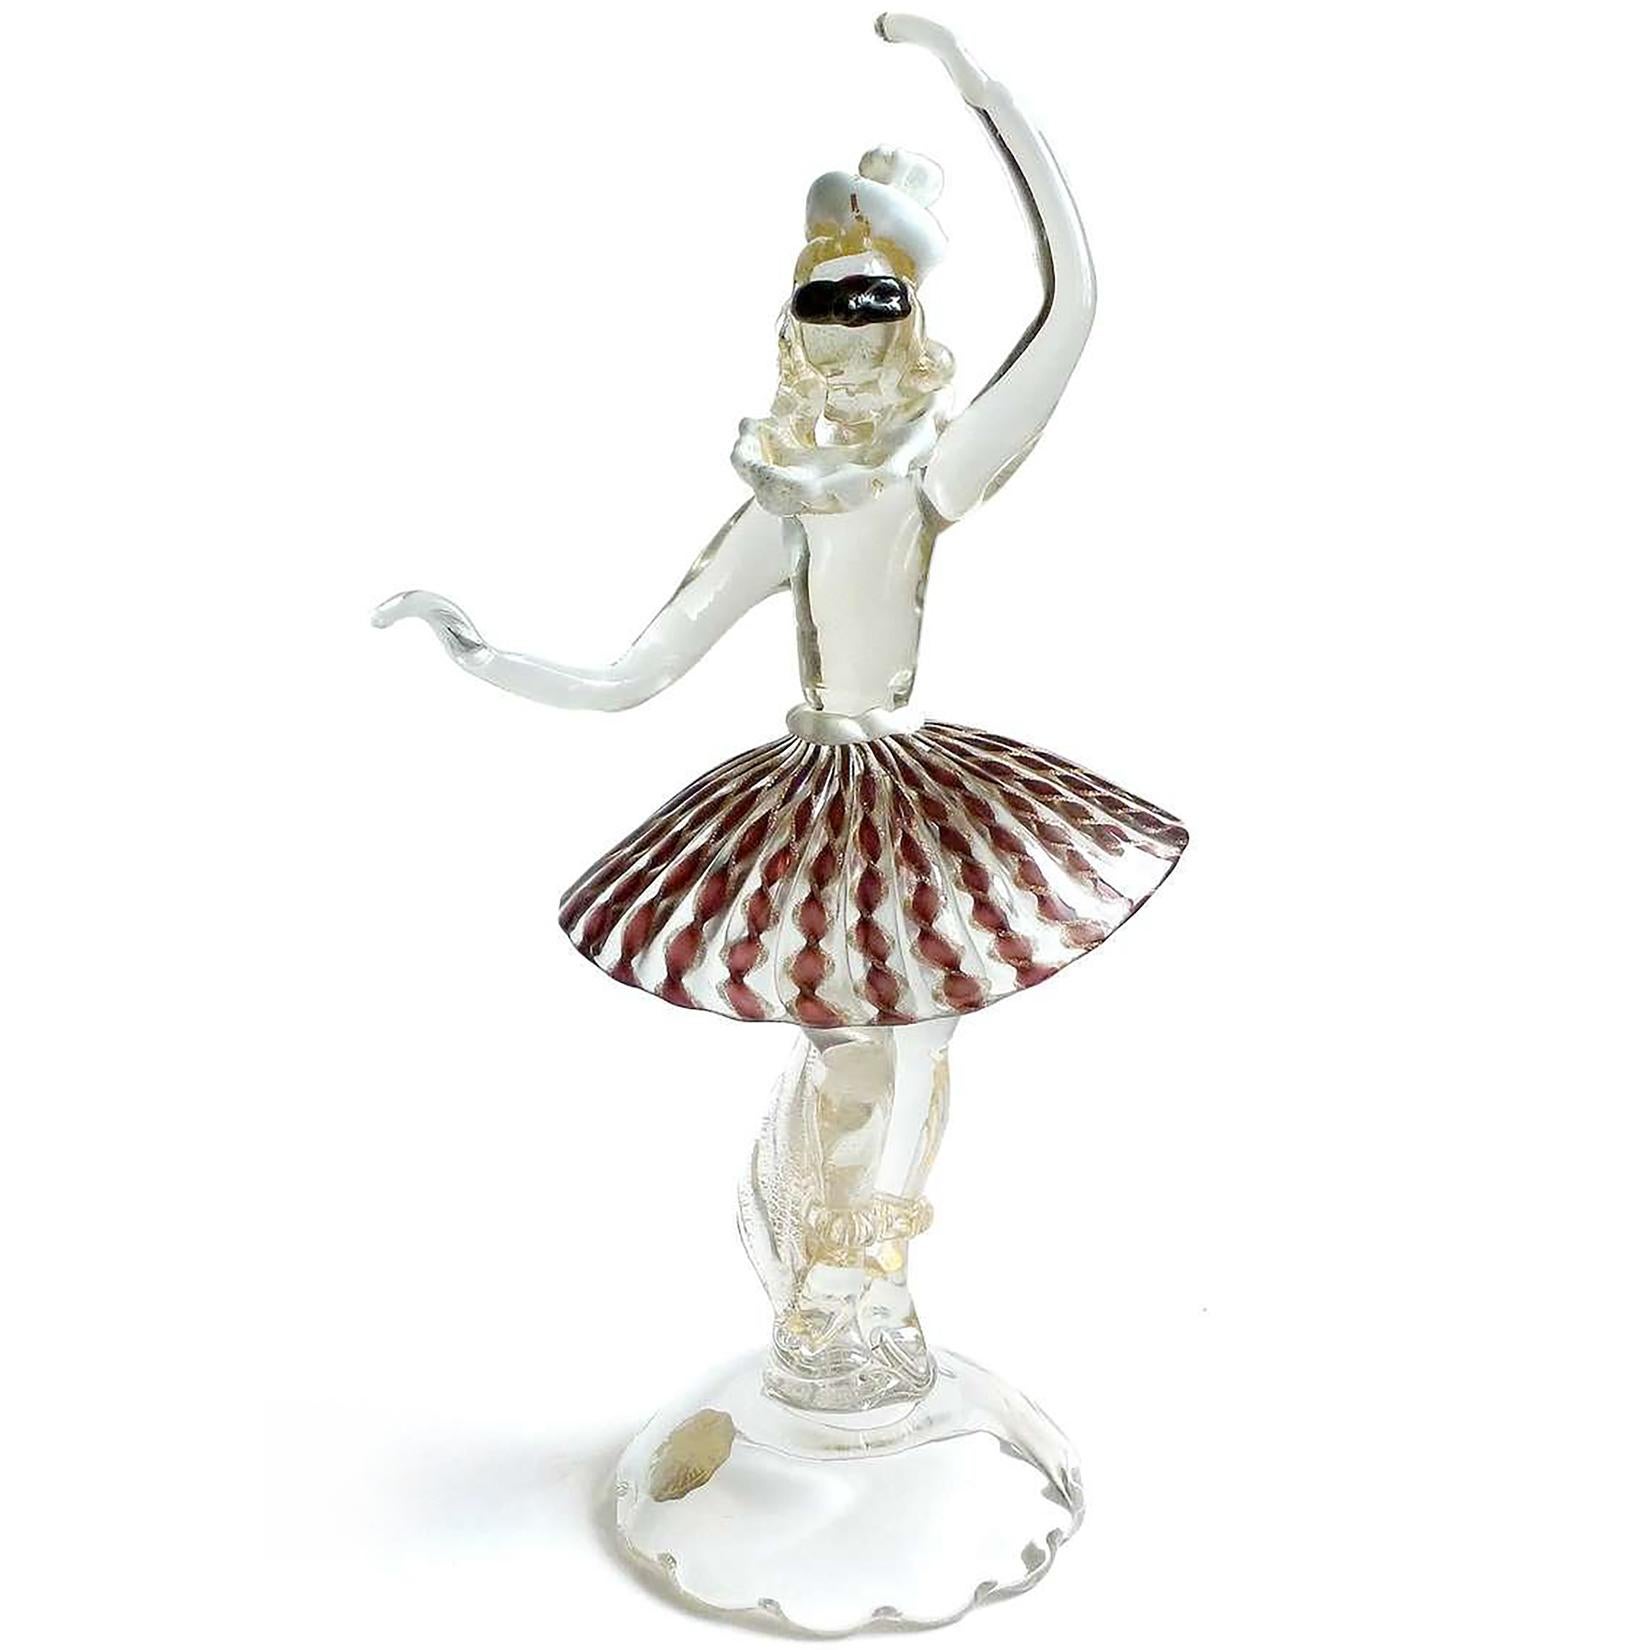 Magnifique et unique sculpture de ballerine dansante en verre d'art italien soufflé à la bouche à Murano, avec masque d'arlequin, chapeau et jupe en rubans de Zanfirico. Documenté à la société Salviati, marqué d'un original 